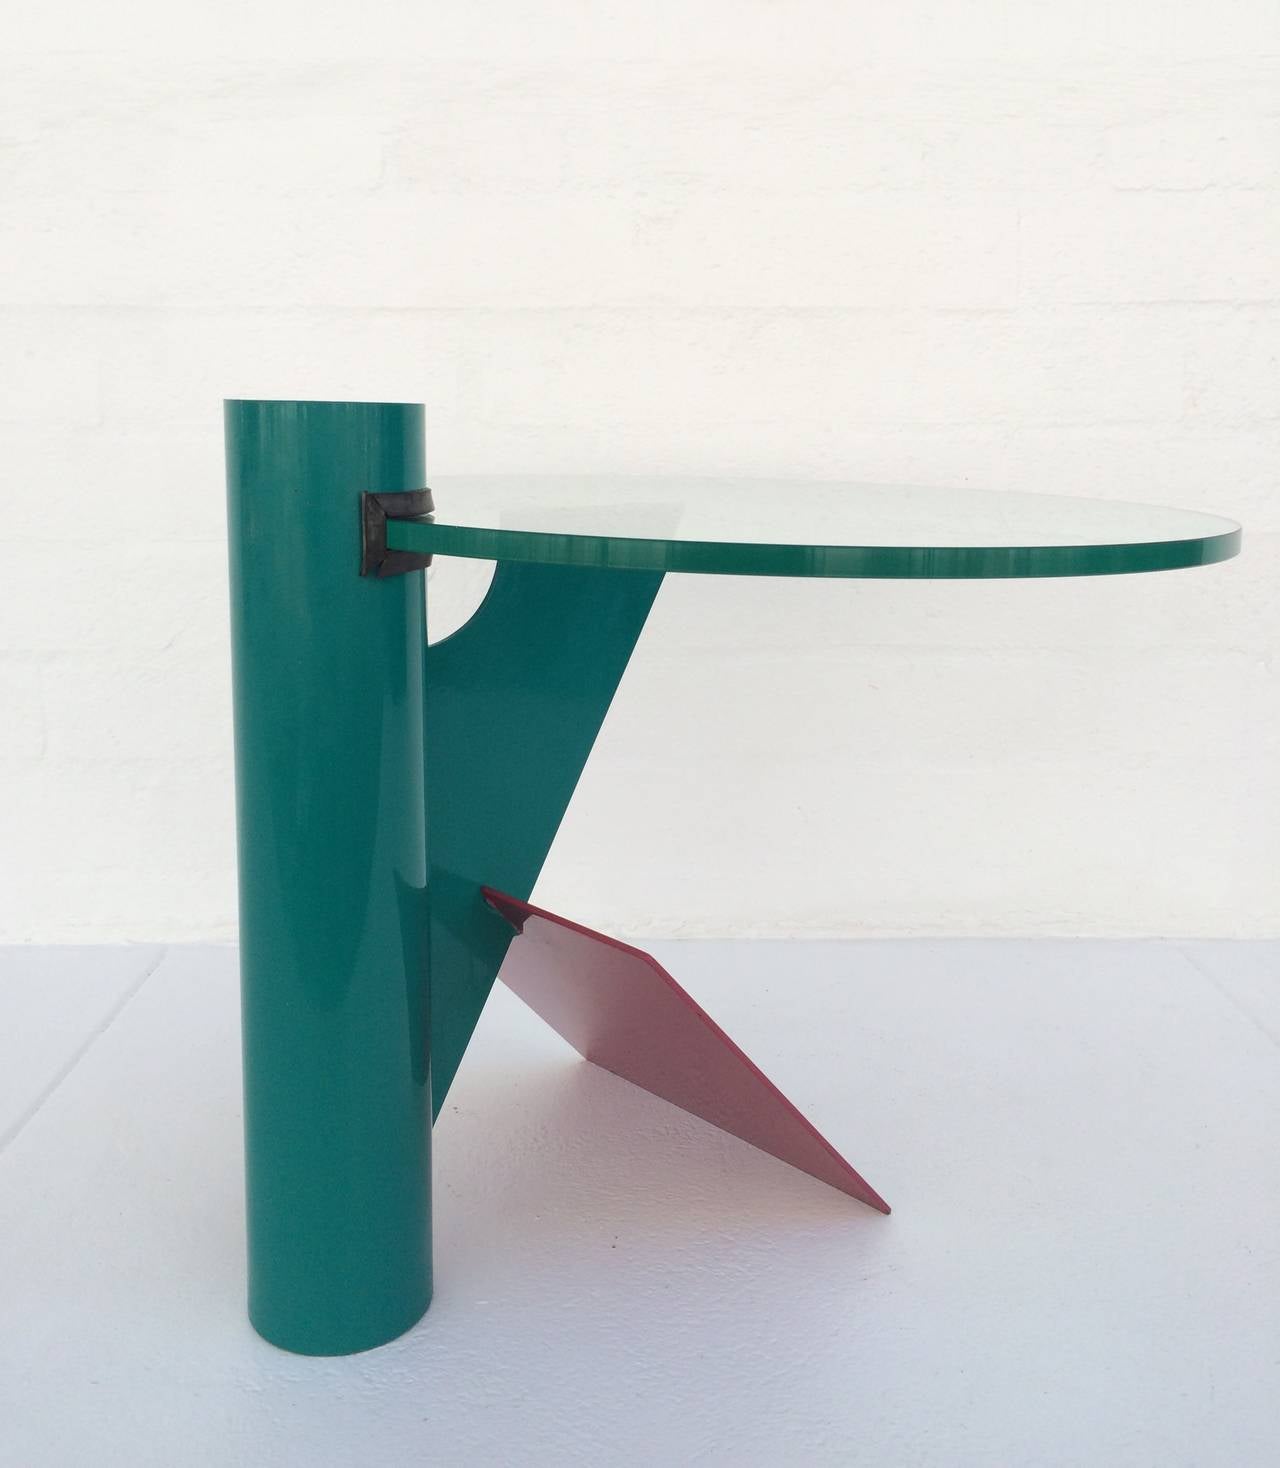 Une table d'appoint amusante et fantaisiste de style Memphis, à la manière de Peter Shire. 
Cette table est composée d'acier peint et d'un plateau en verre de 23,5 pouces de diamètre et de 1/2 pouce d'épaisseur, 
vers les années 1980.